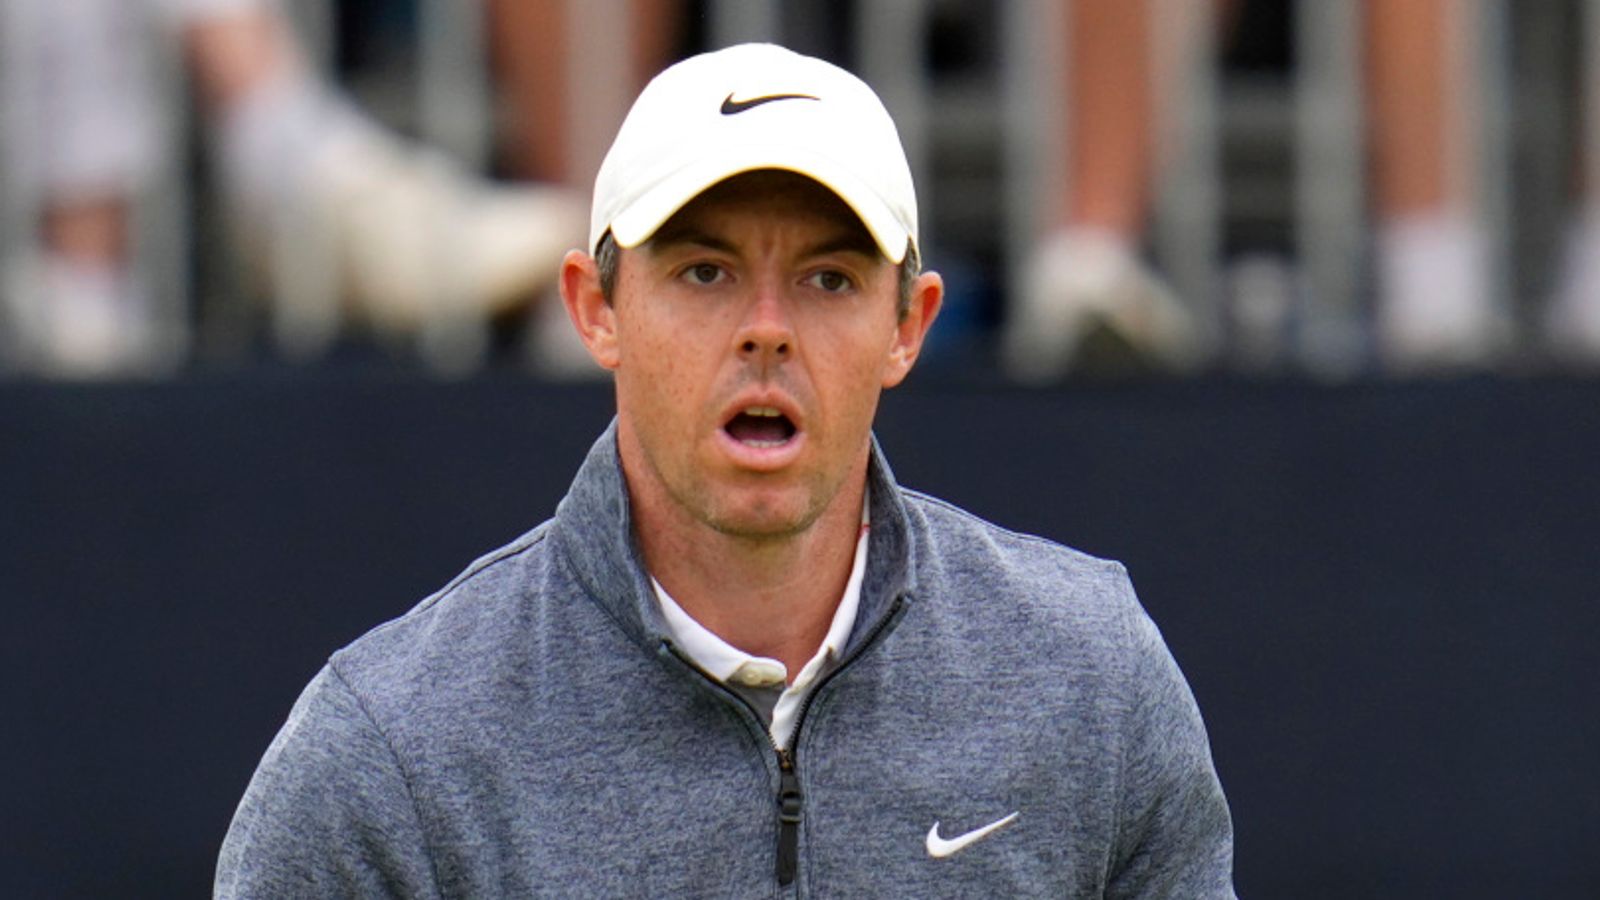 AS Terbuka: Rory McIlroy mengatakan putaran ketiga di Brooklyn adalah salah satu ‘hari terberatnya dalam waktu yang lama’ |  berita golf